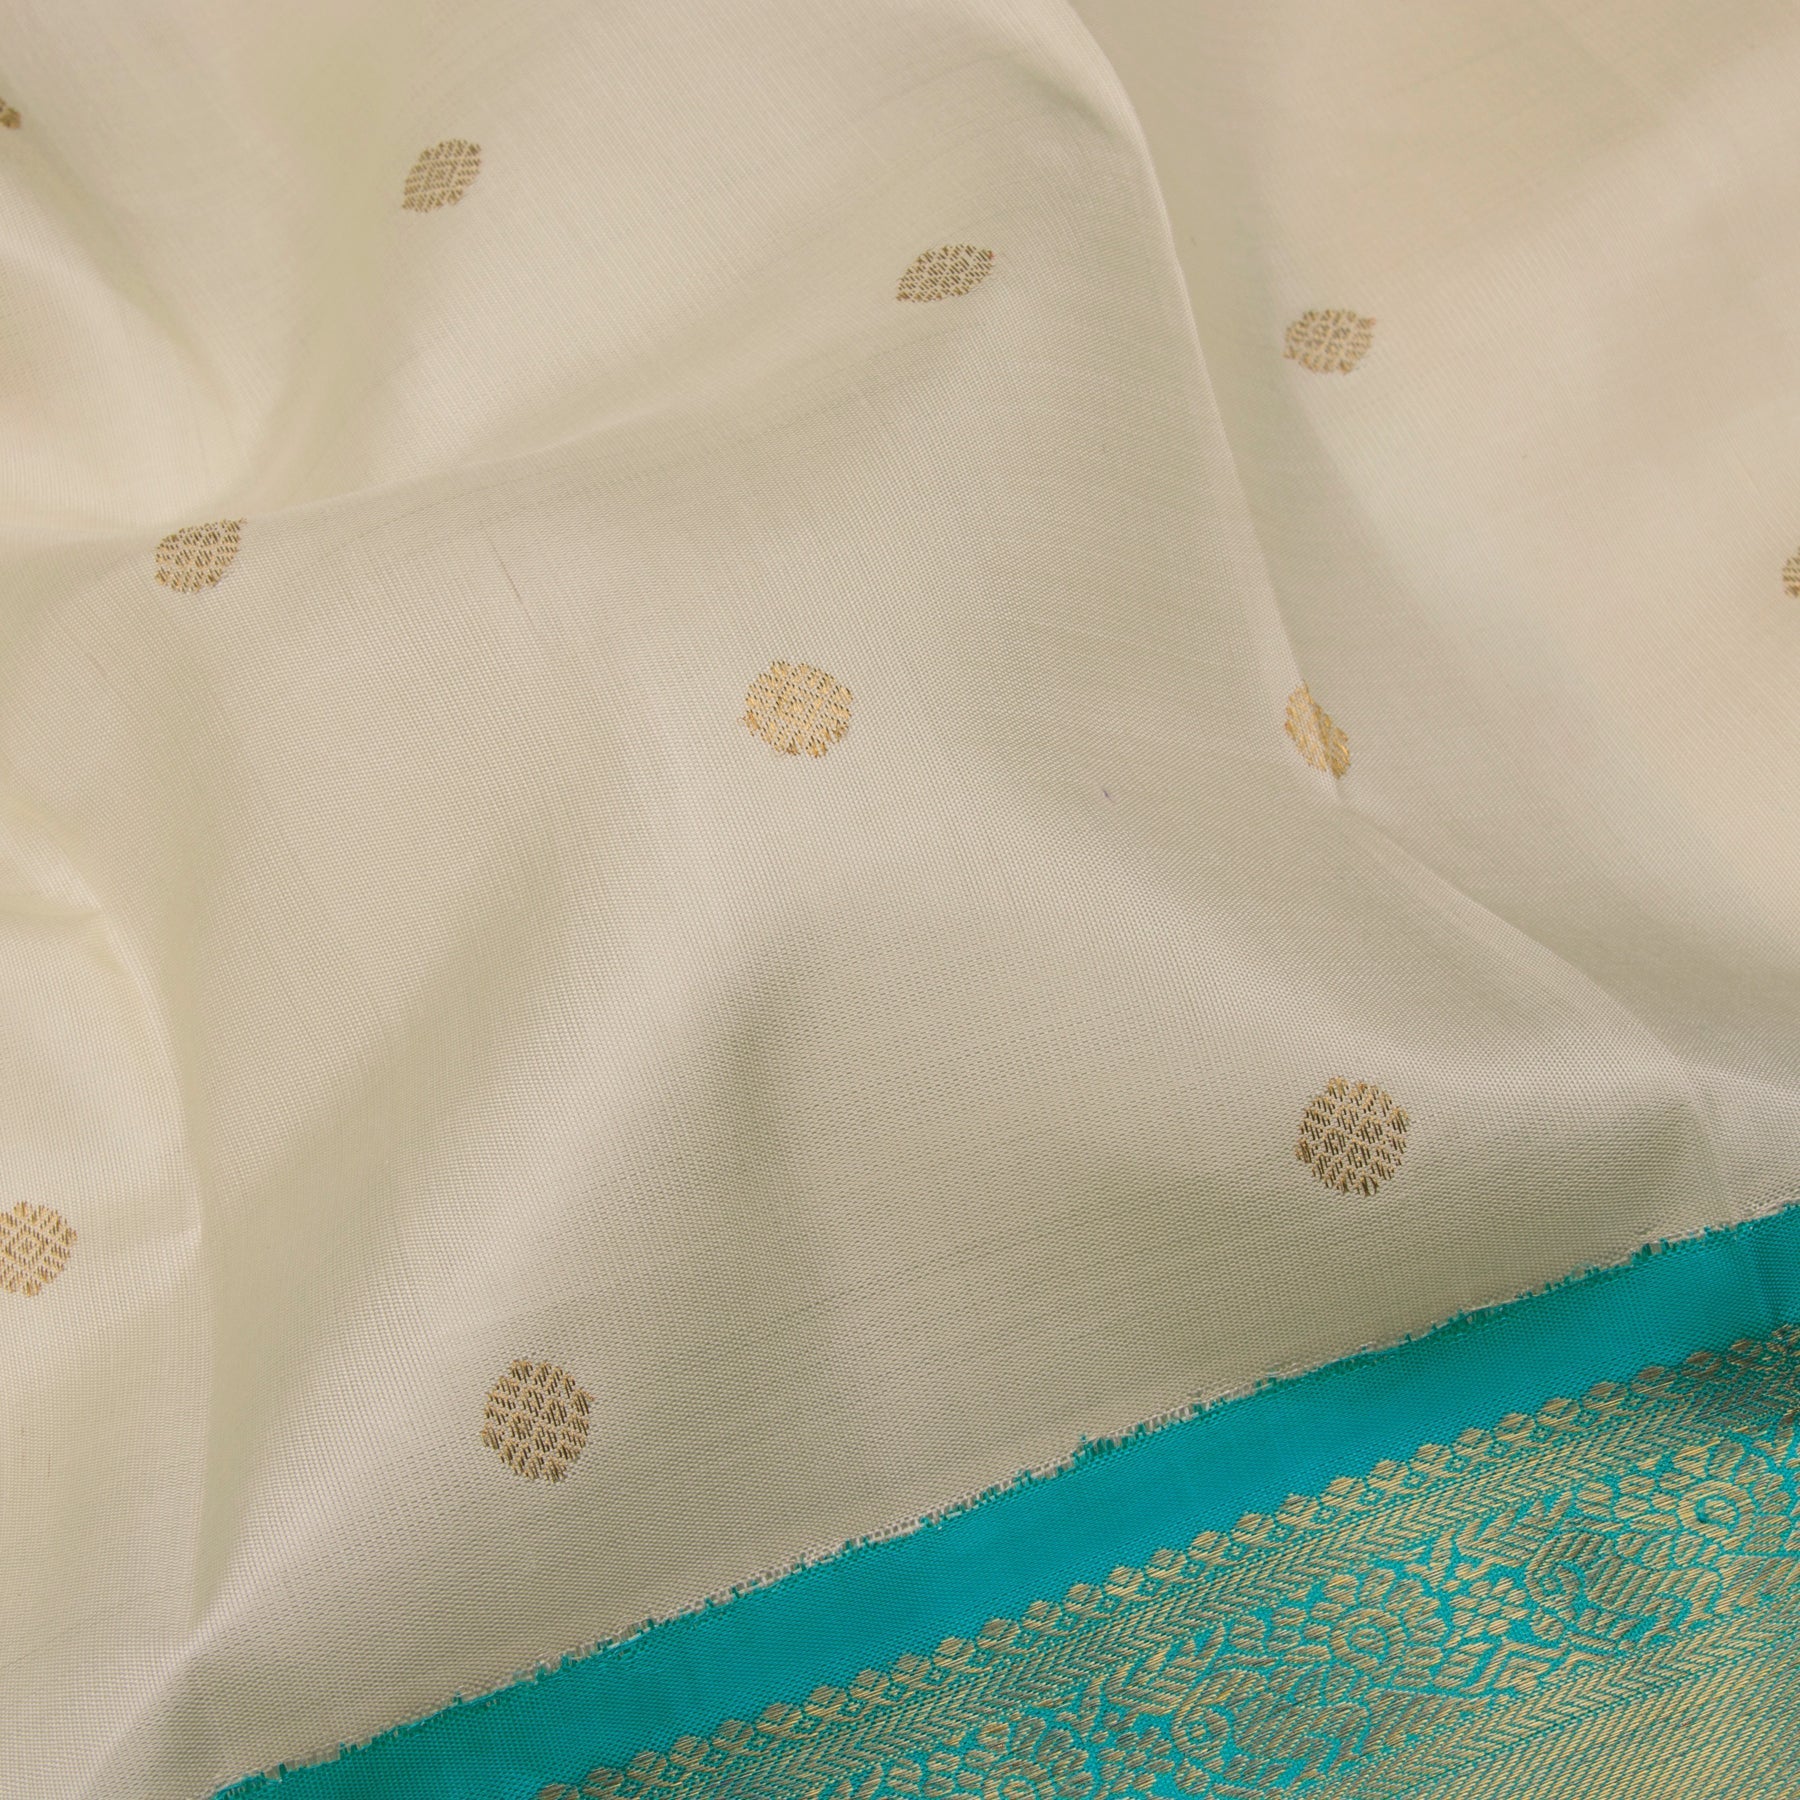 Kanakavalli Kanjivaram Silk Sari 22-110-HS001-12548 - Fabric View